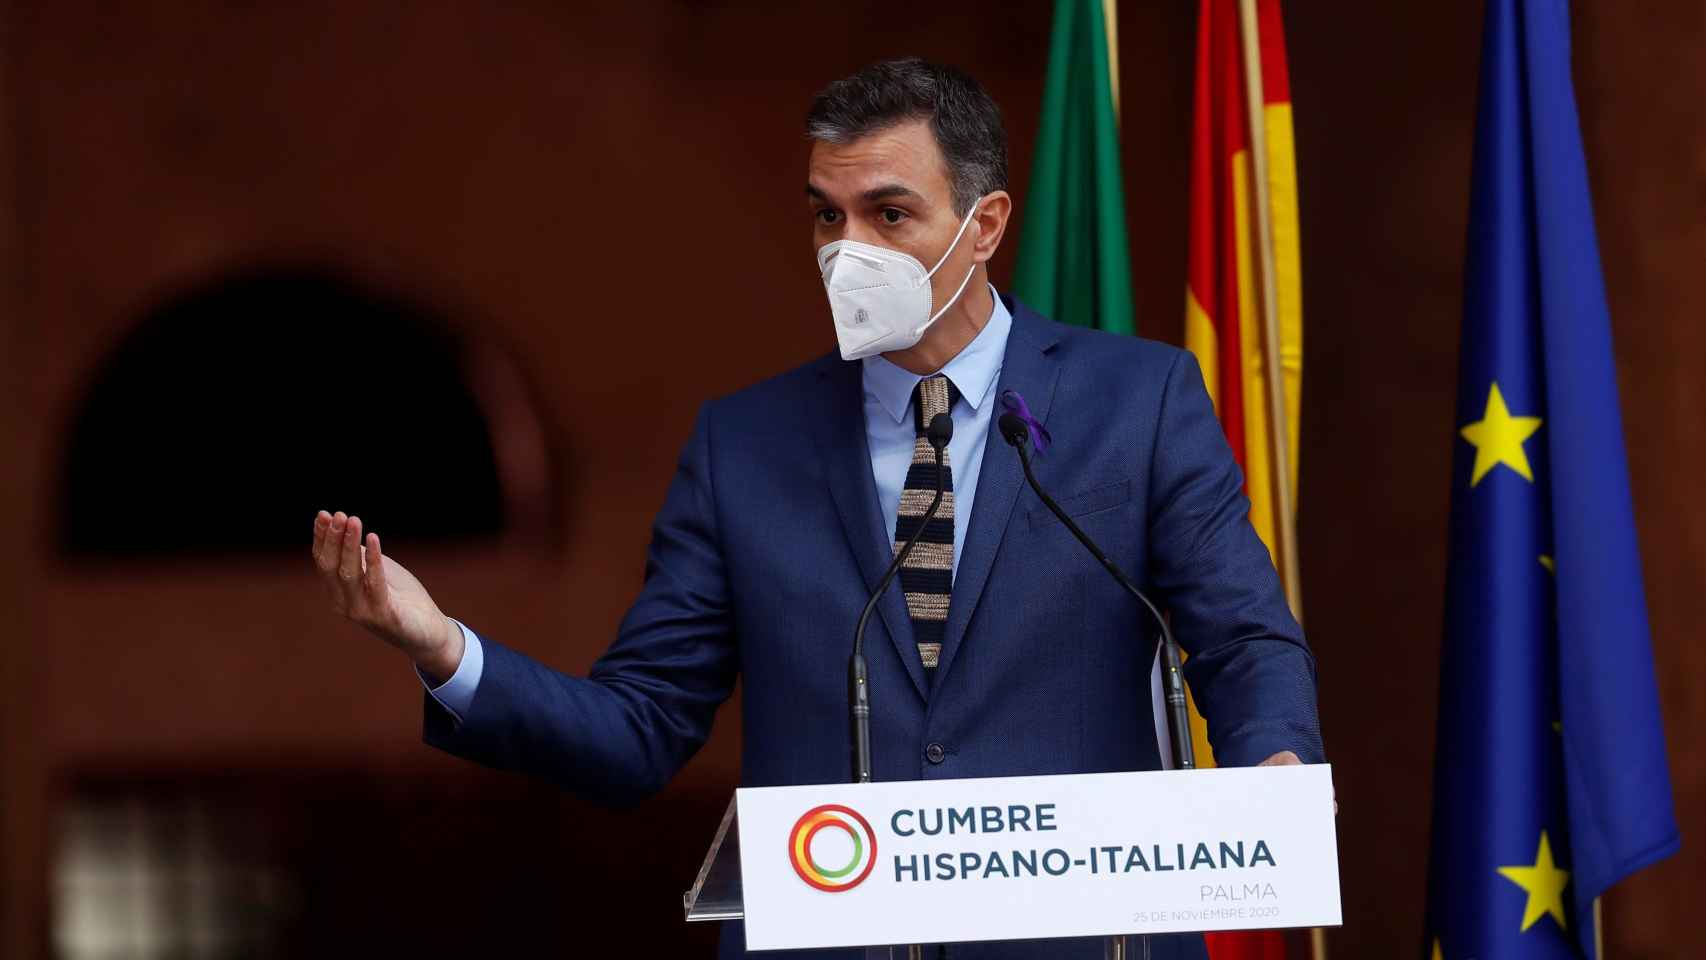 El presidente del Gobierno, Pedro Sánchez, comparece en el marco de la XIX Cumbre bilateral de España e Italia, celebrada este miércoles en el Palacio de la Almudaina en Palma de Mallorca.